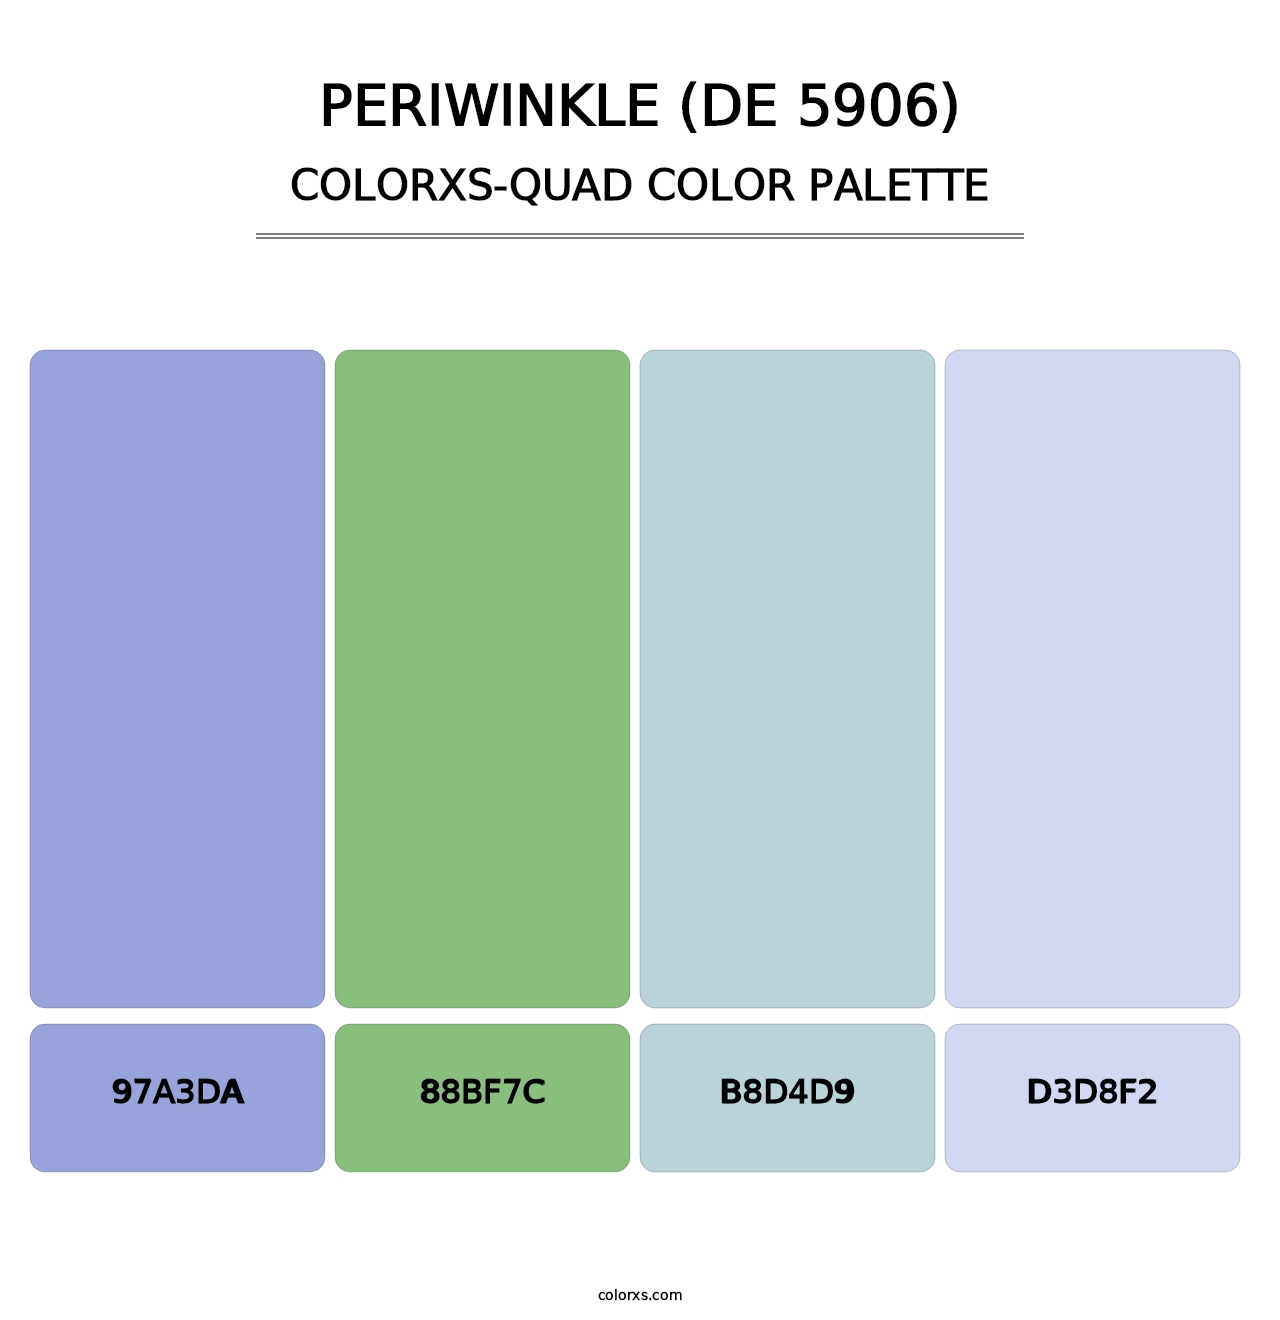 Periwinkle (DE 5906) - Colorxs Quad Palette